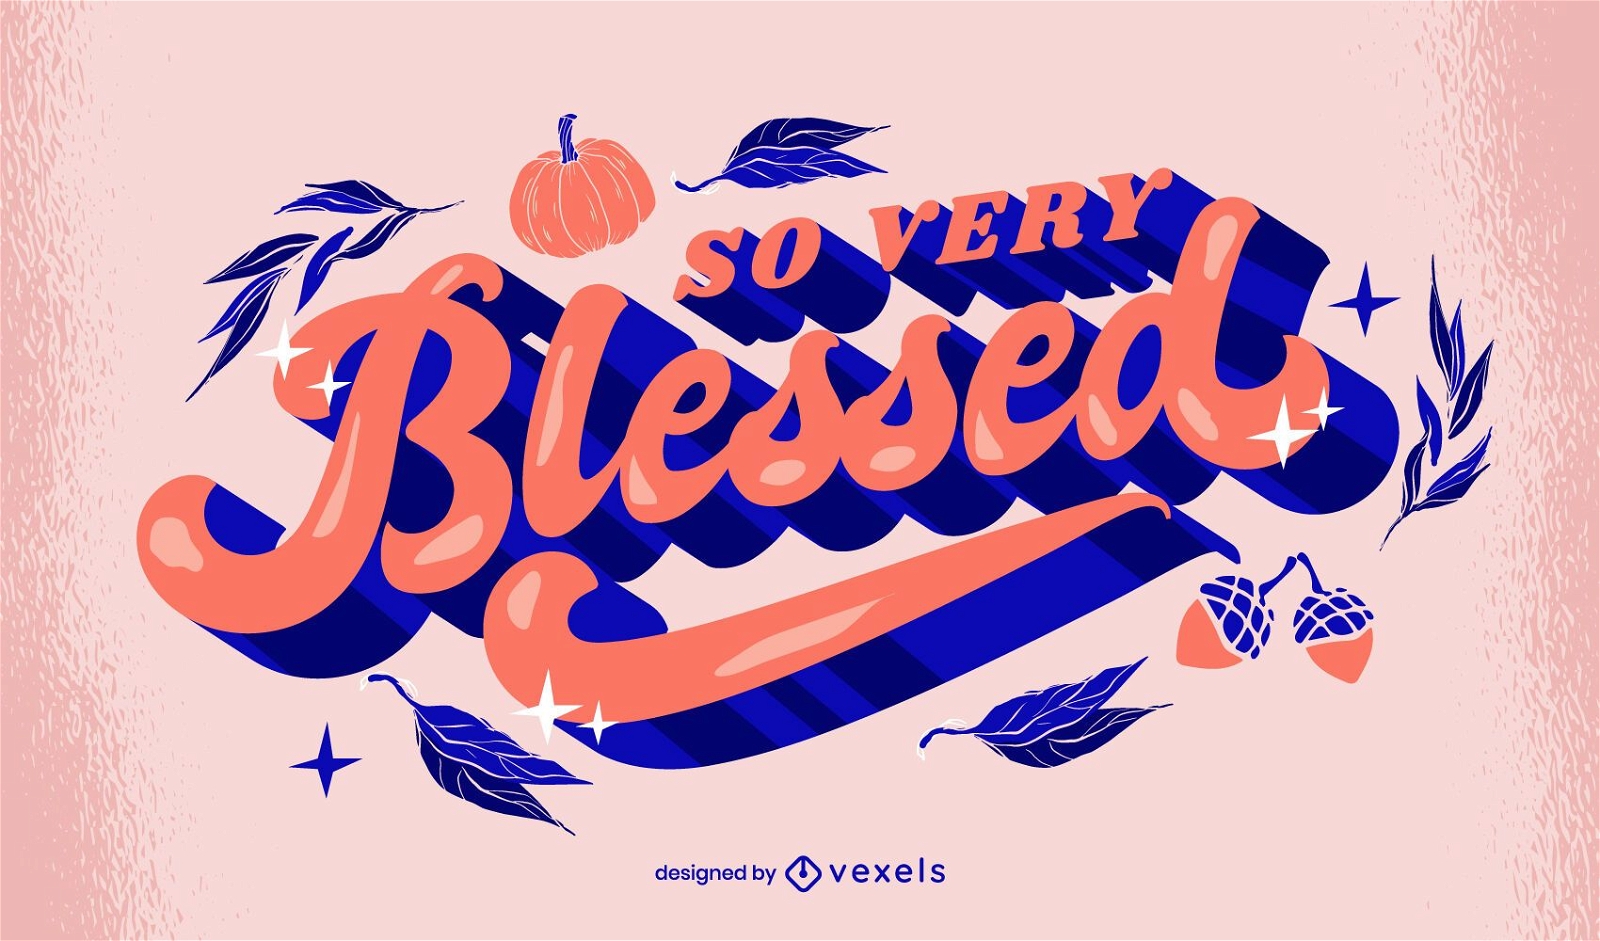 Thanksgiving Blessed Lettering Design